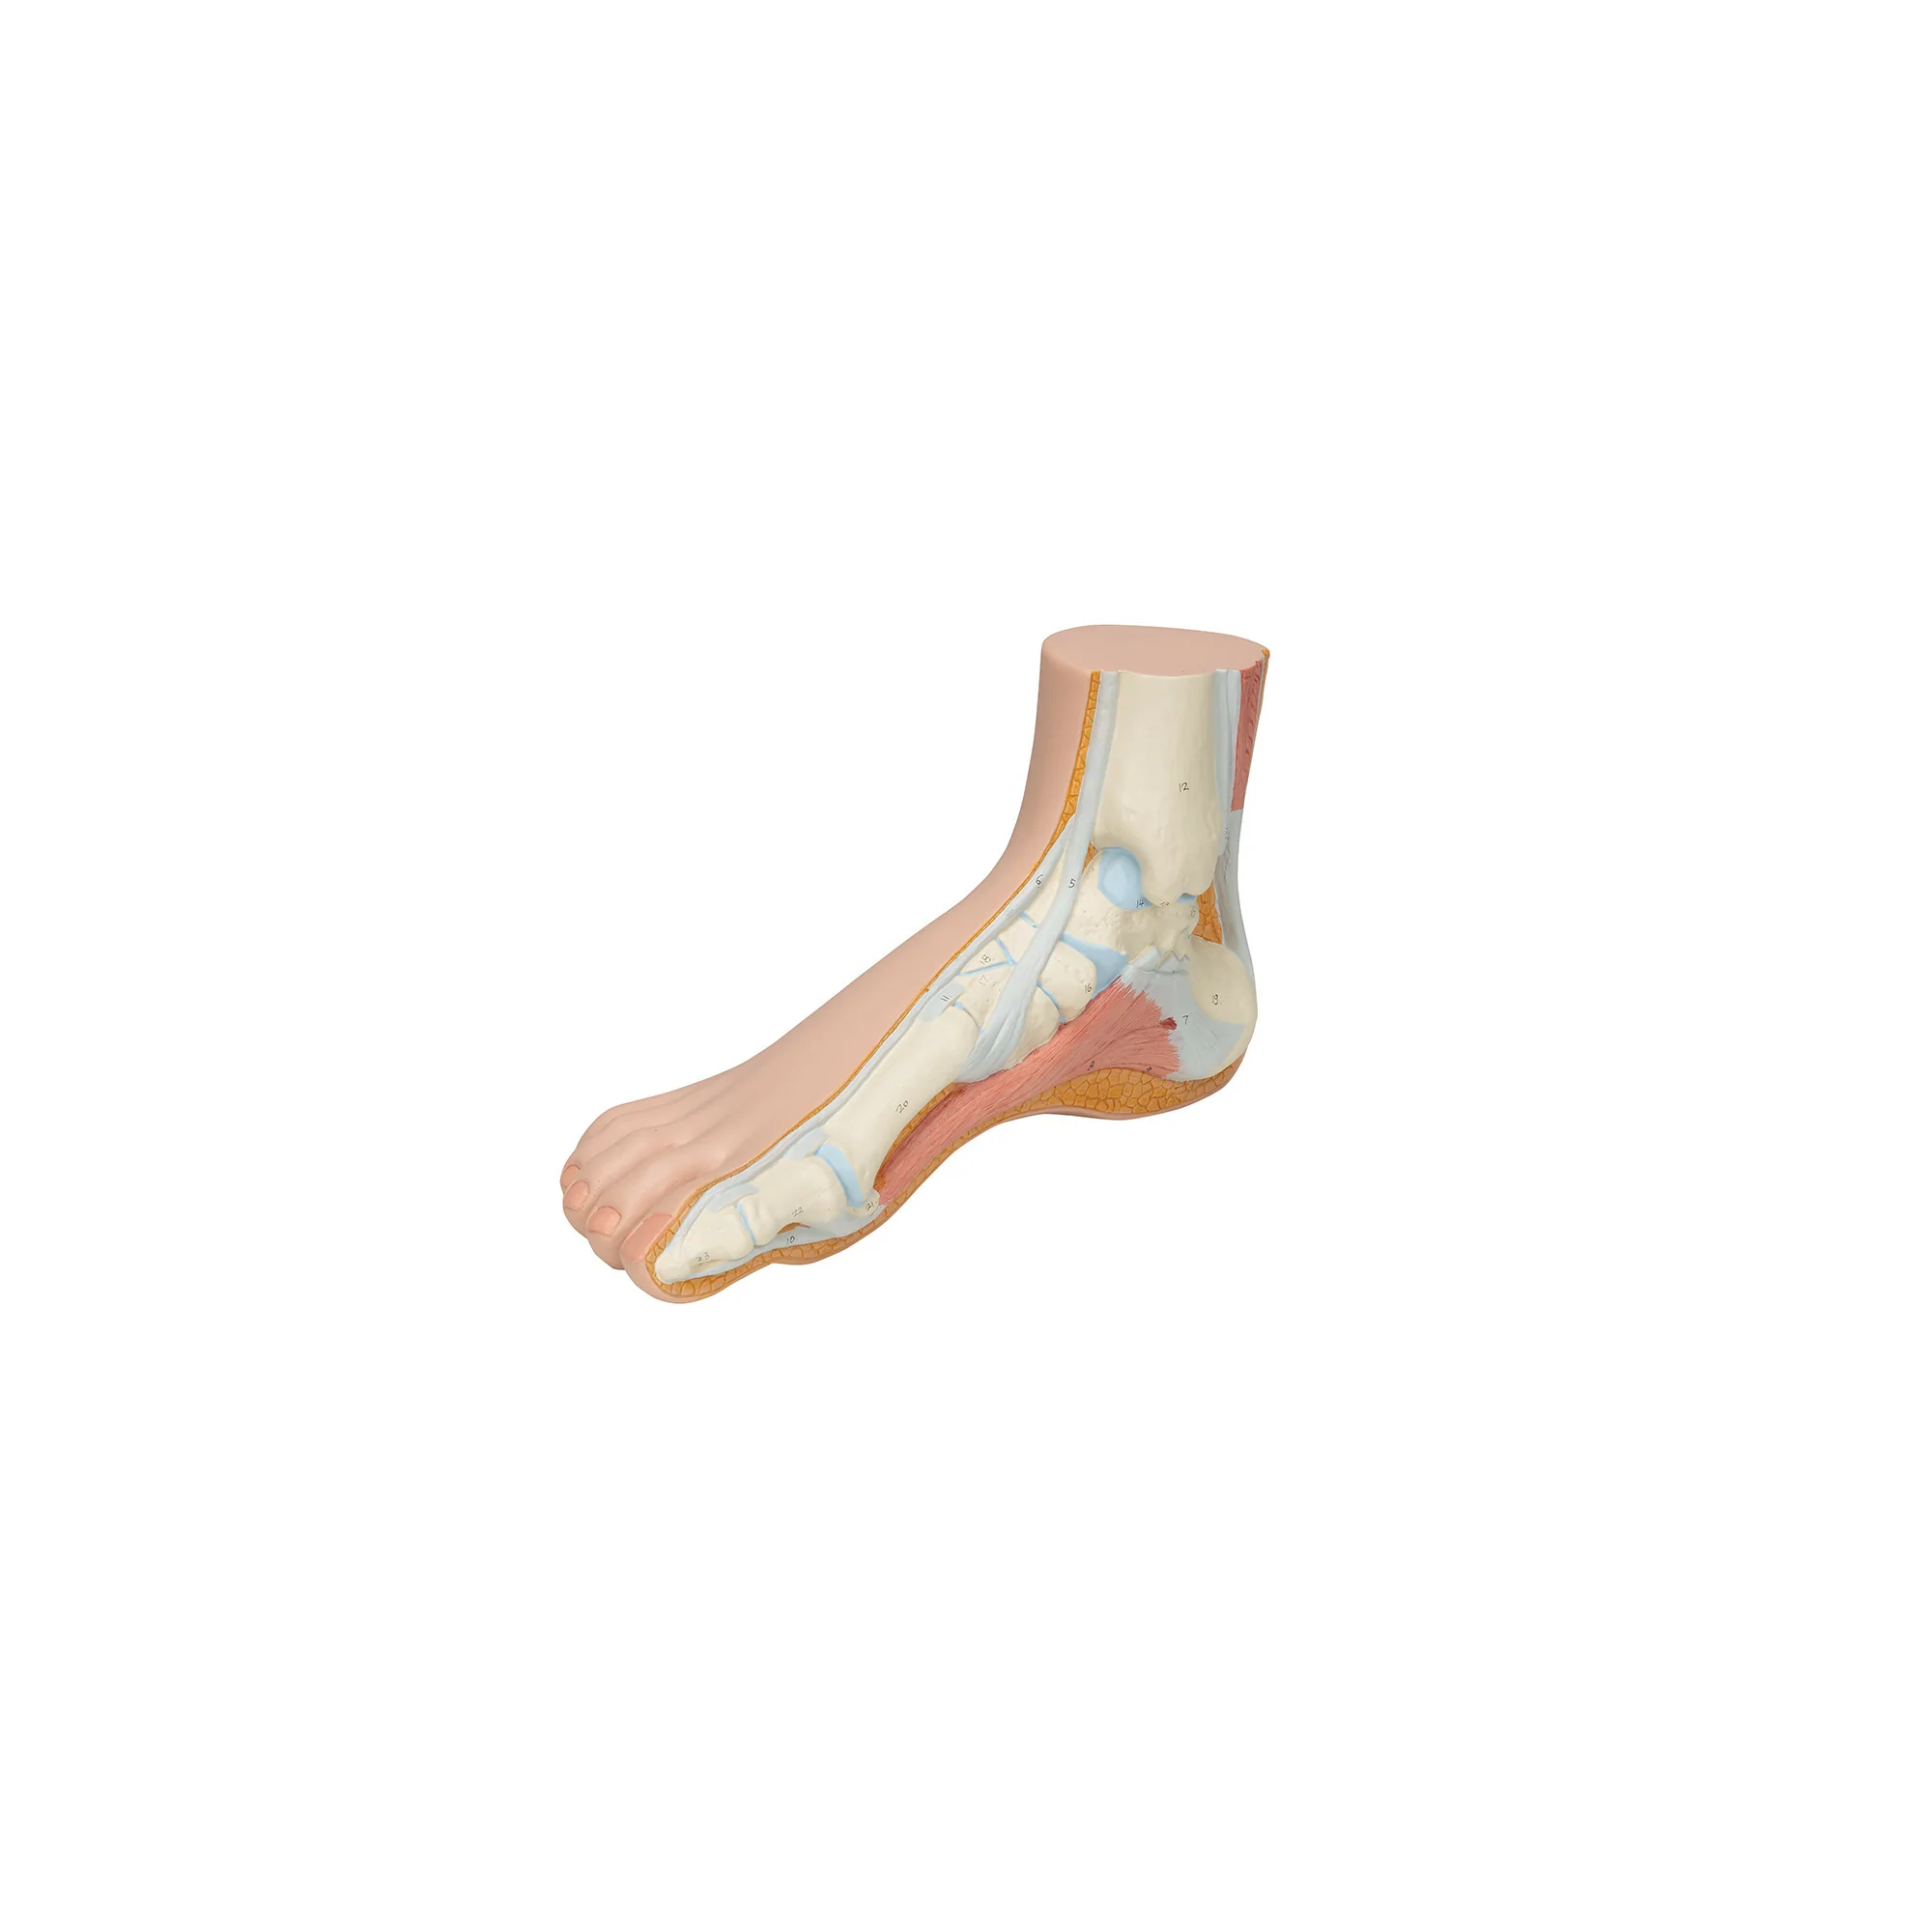 Squelette d'un pied normal